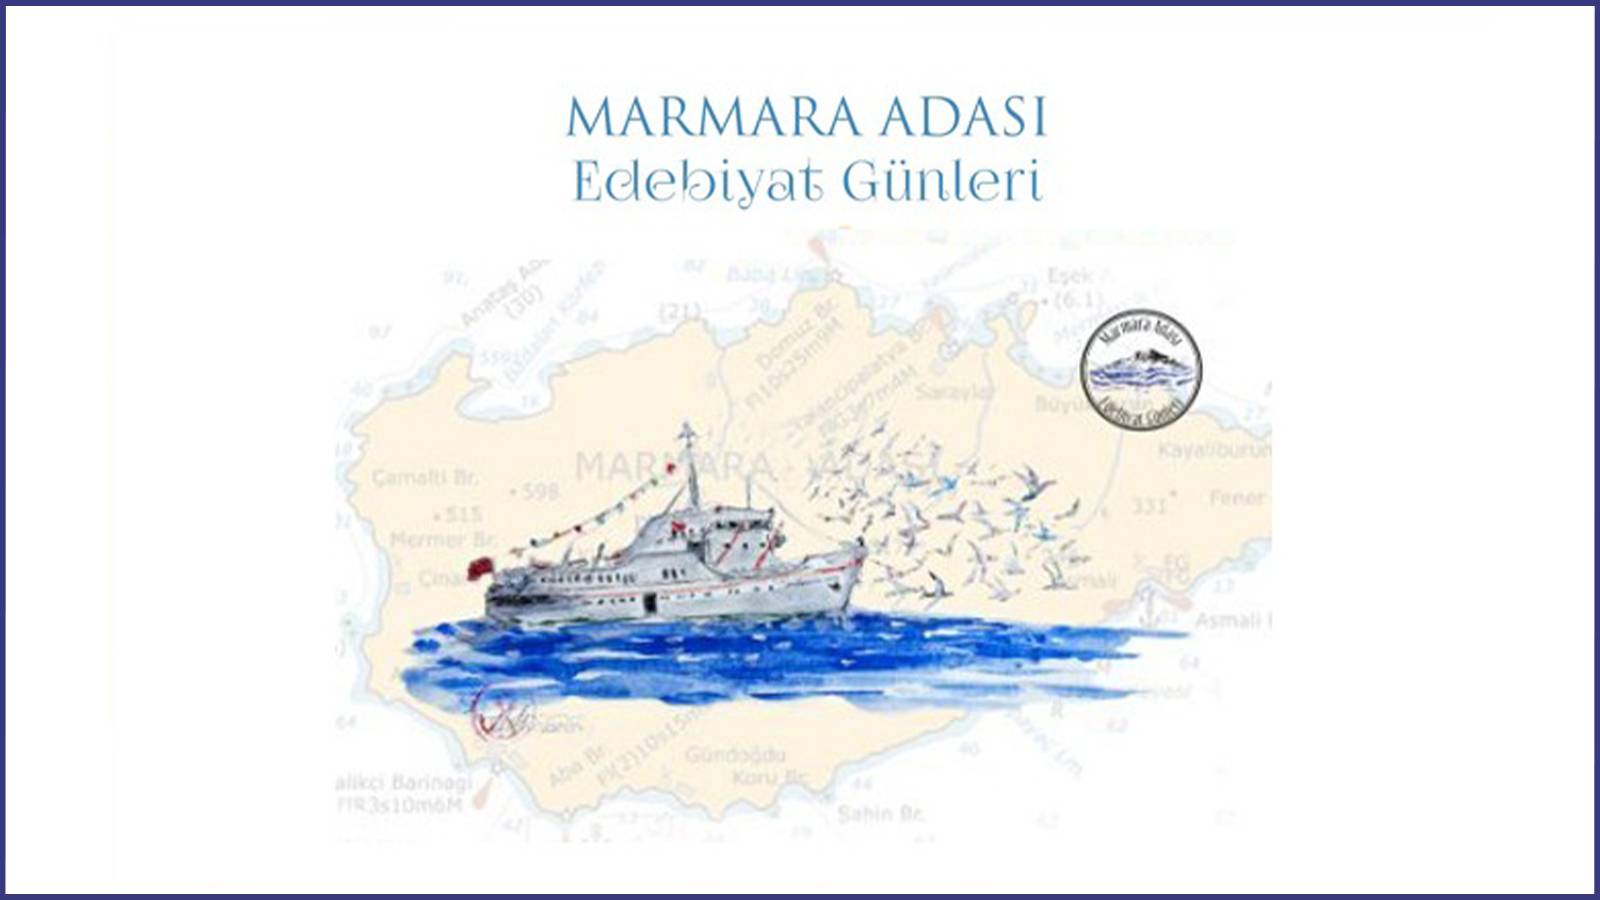 "Edebiyat denizleri aşar karalara ulaşır": Edebiyatçılar Marmara Adası'nda buluşuyor